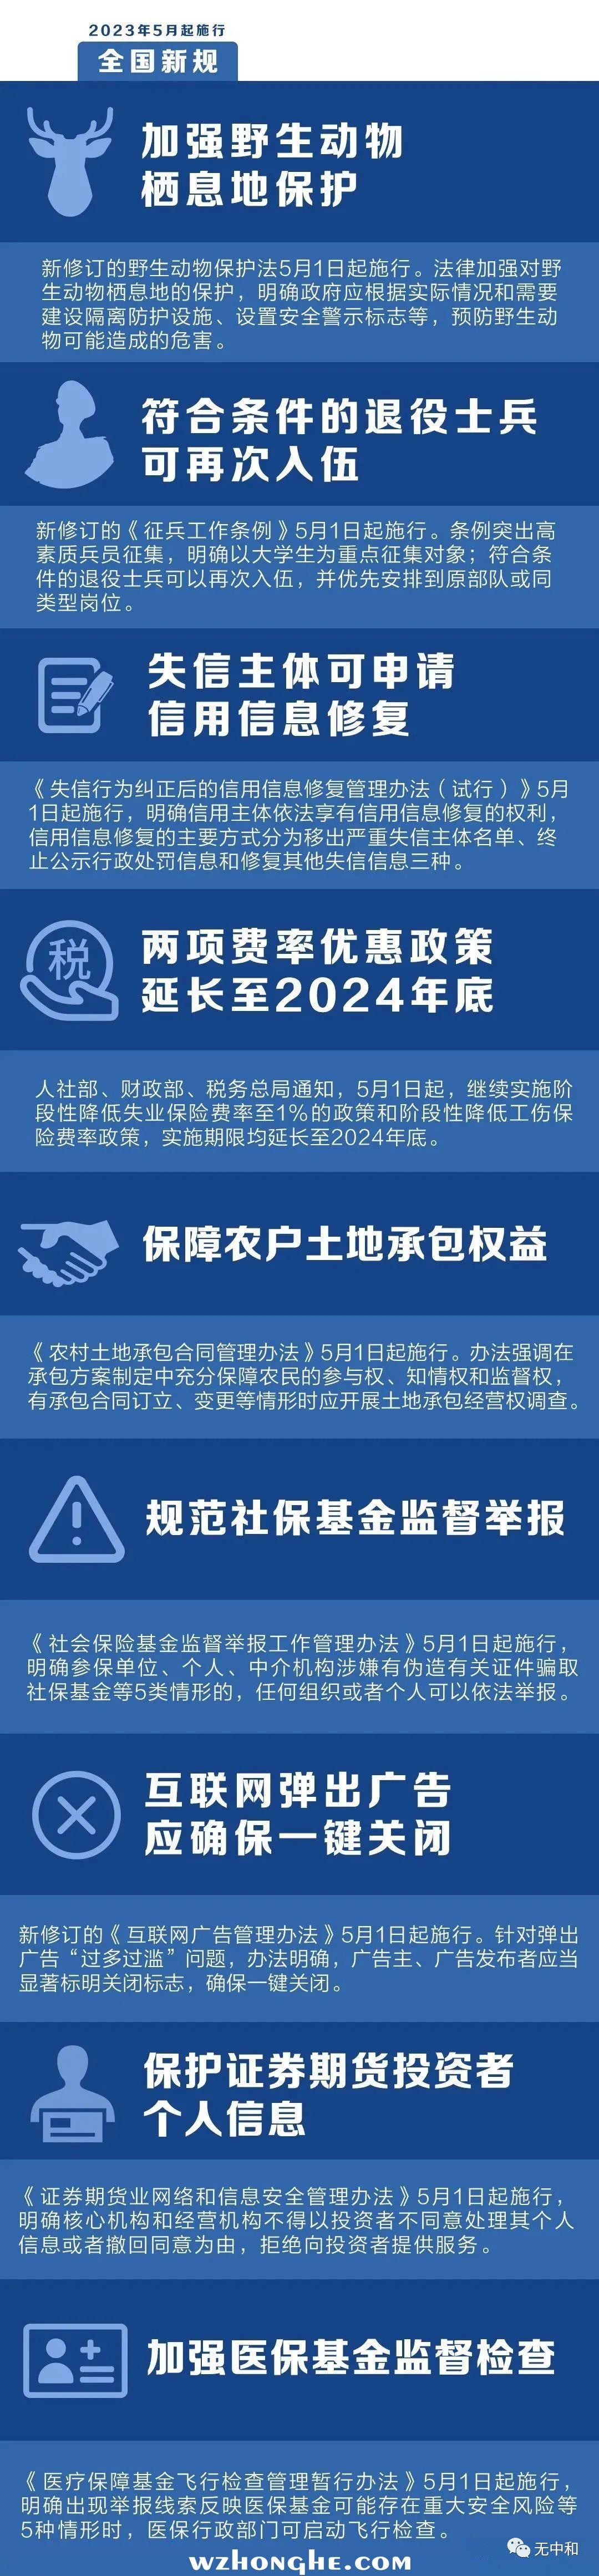 202305全国新规 - 无中和wzhonghe.com